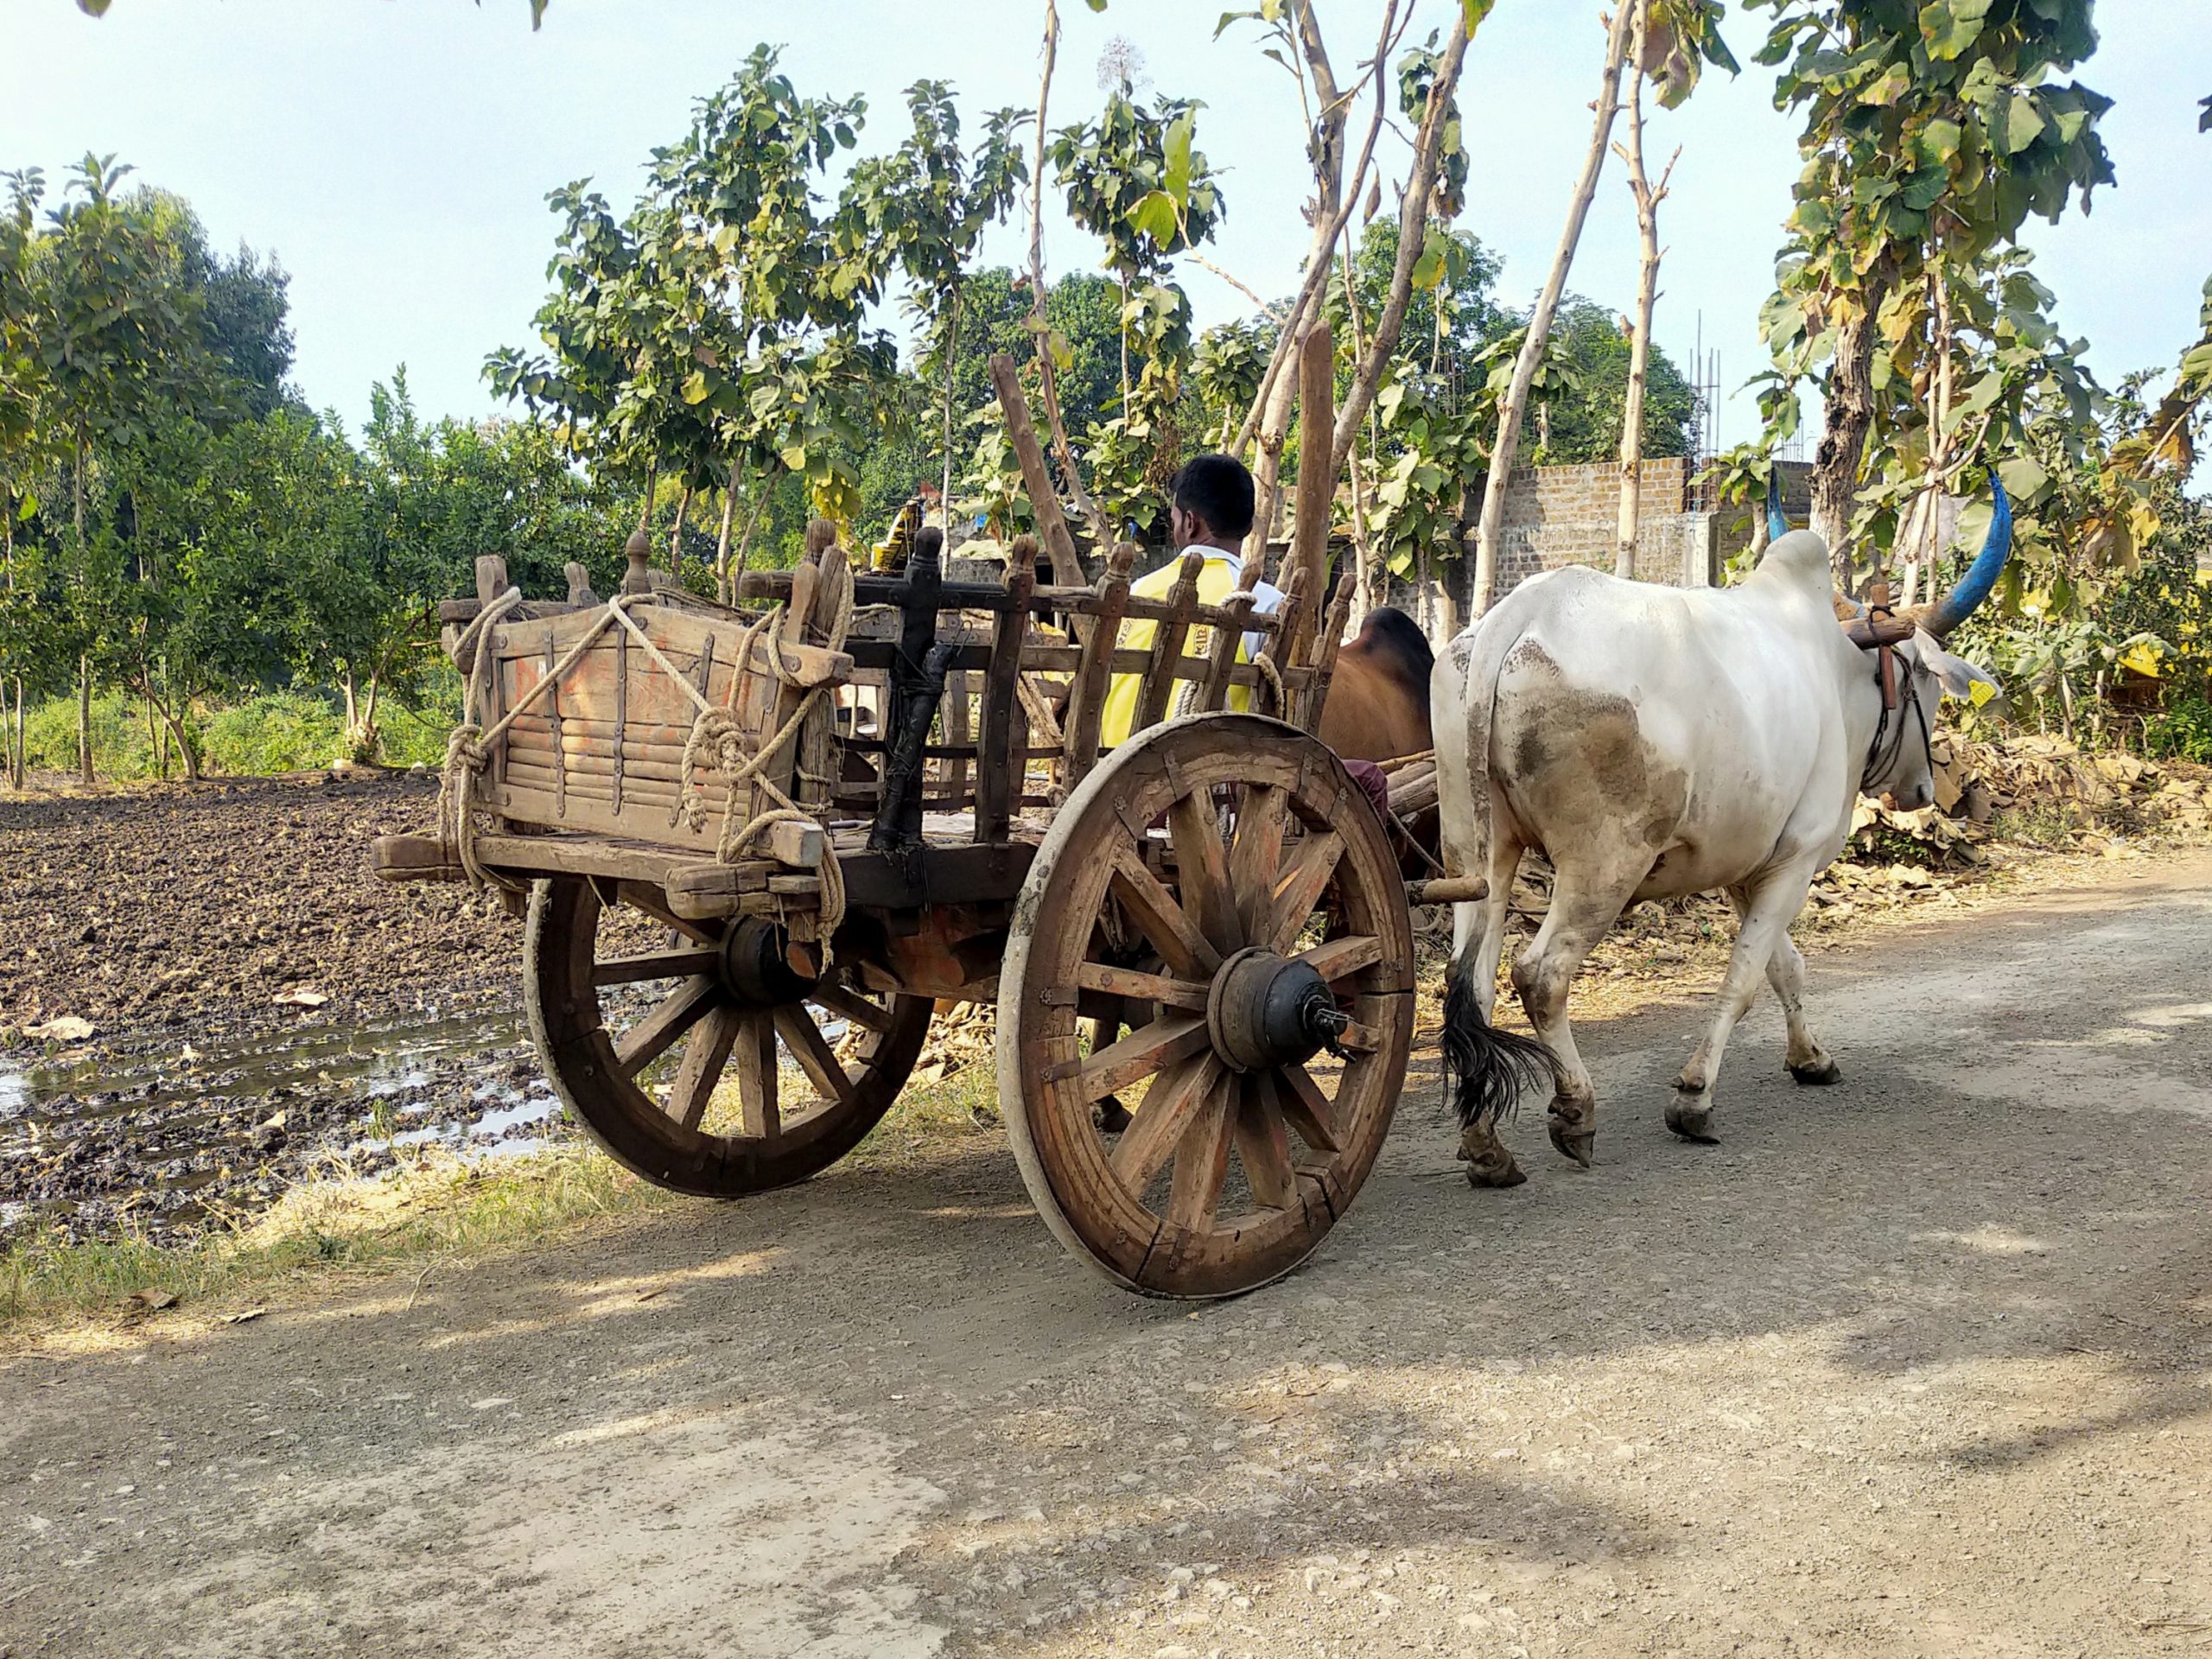 An ox cart